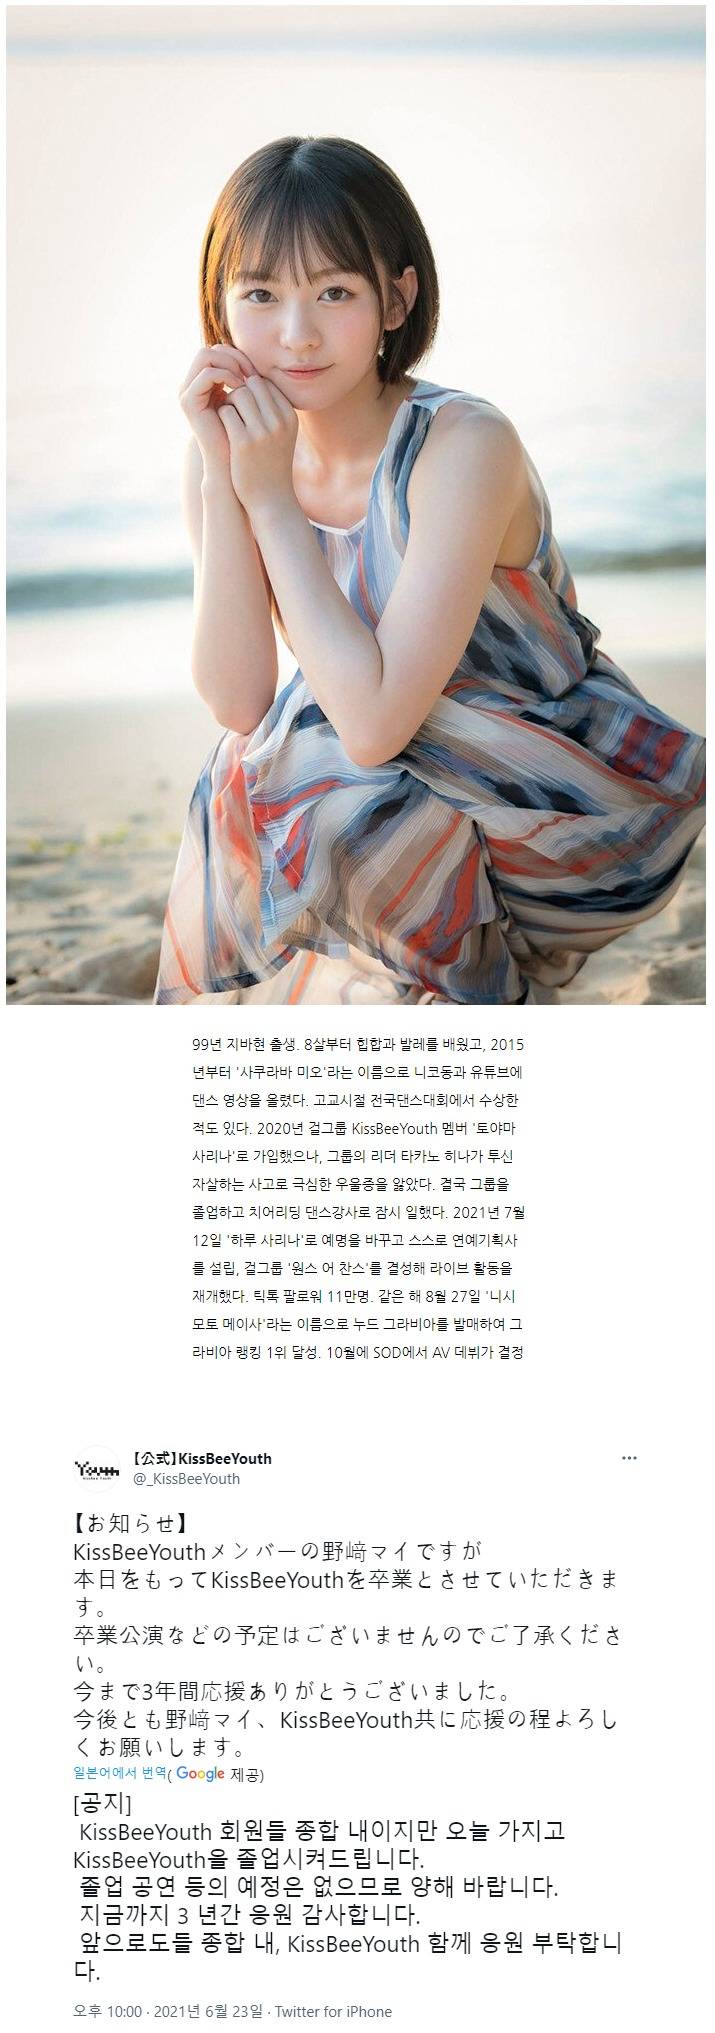 다음달 데뷔하는 신인 배우의 슬픈 사연